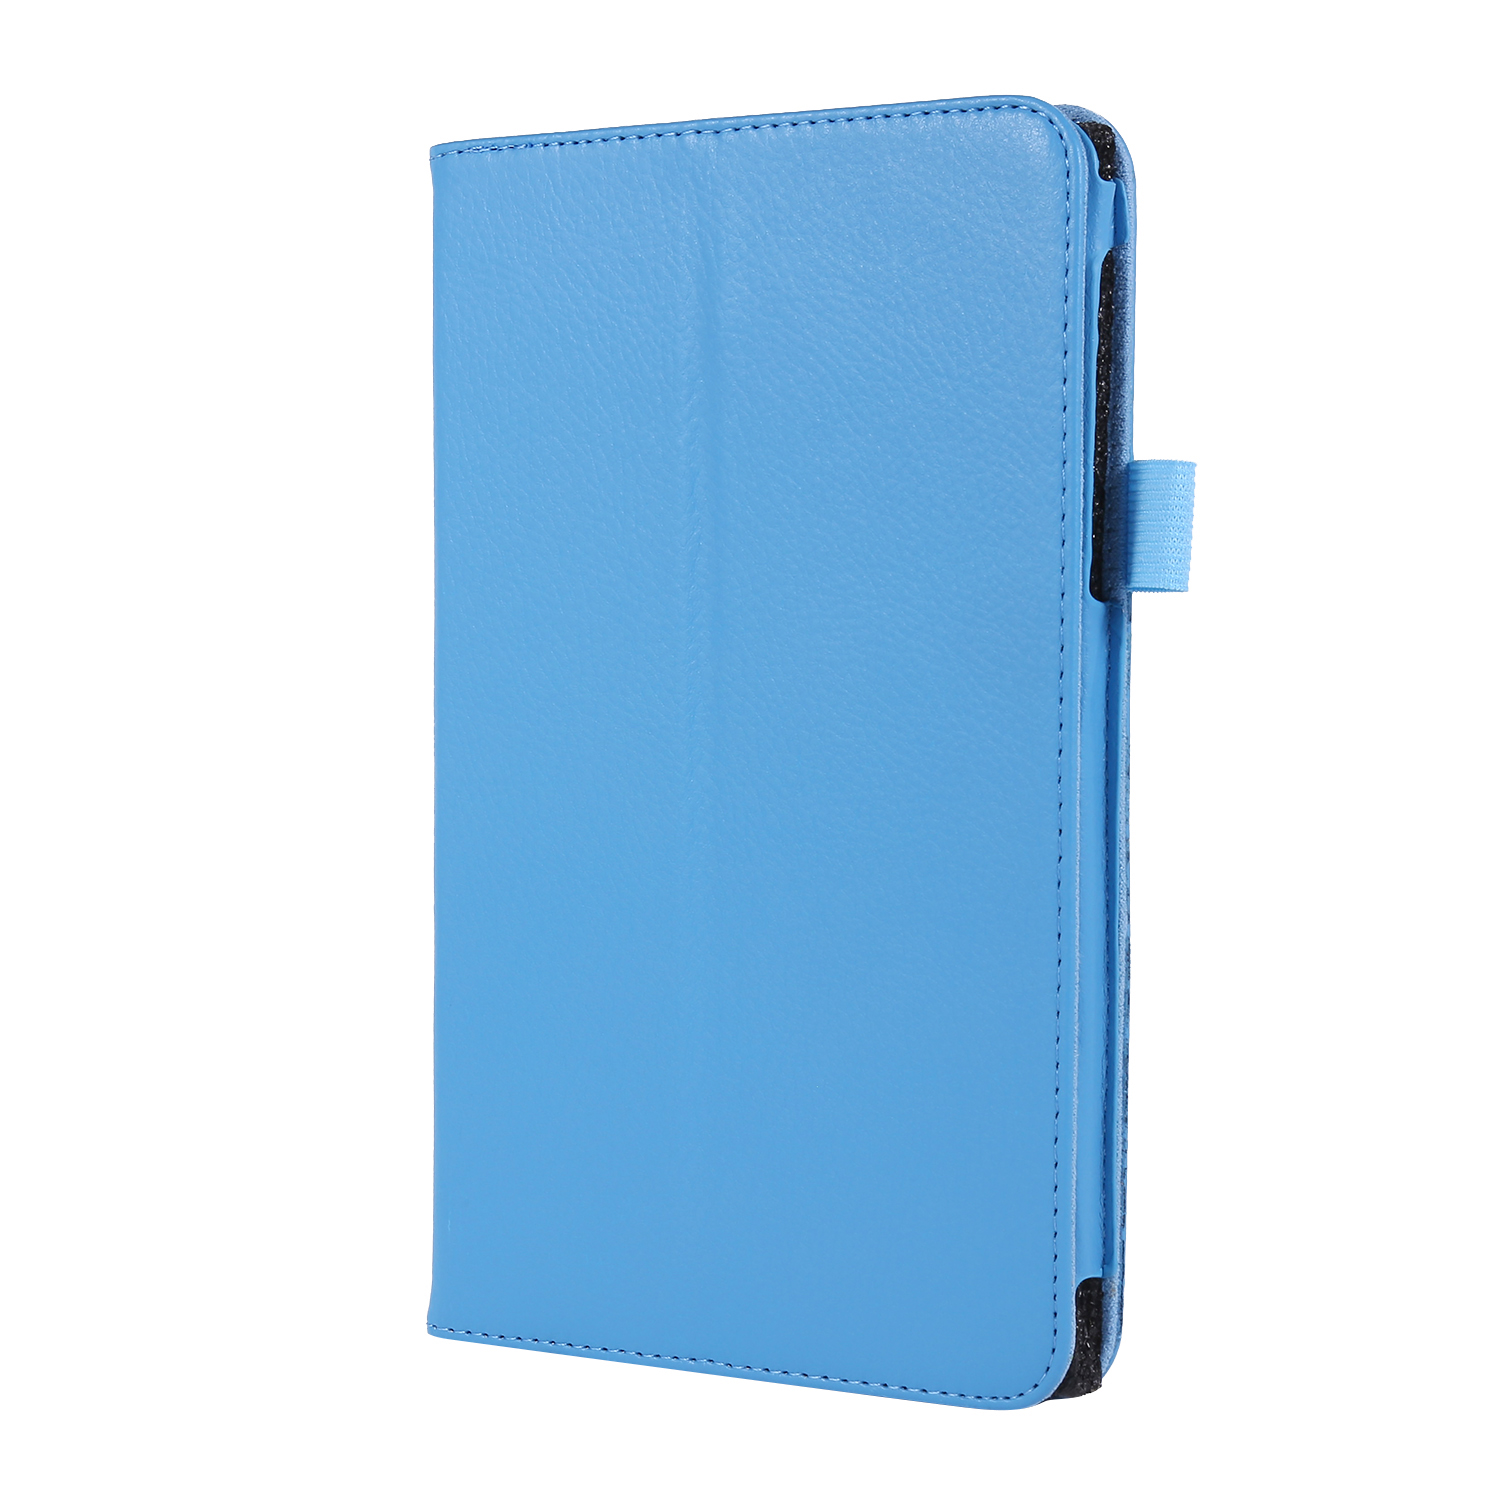 LOBWERK Hülle Schutzhülle Bookcover für SM-T225 A7 Kunstleder, SM-T220 Hellblau Zoll Samsung Lite 8.7 2021 Galaxy Tab